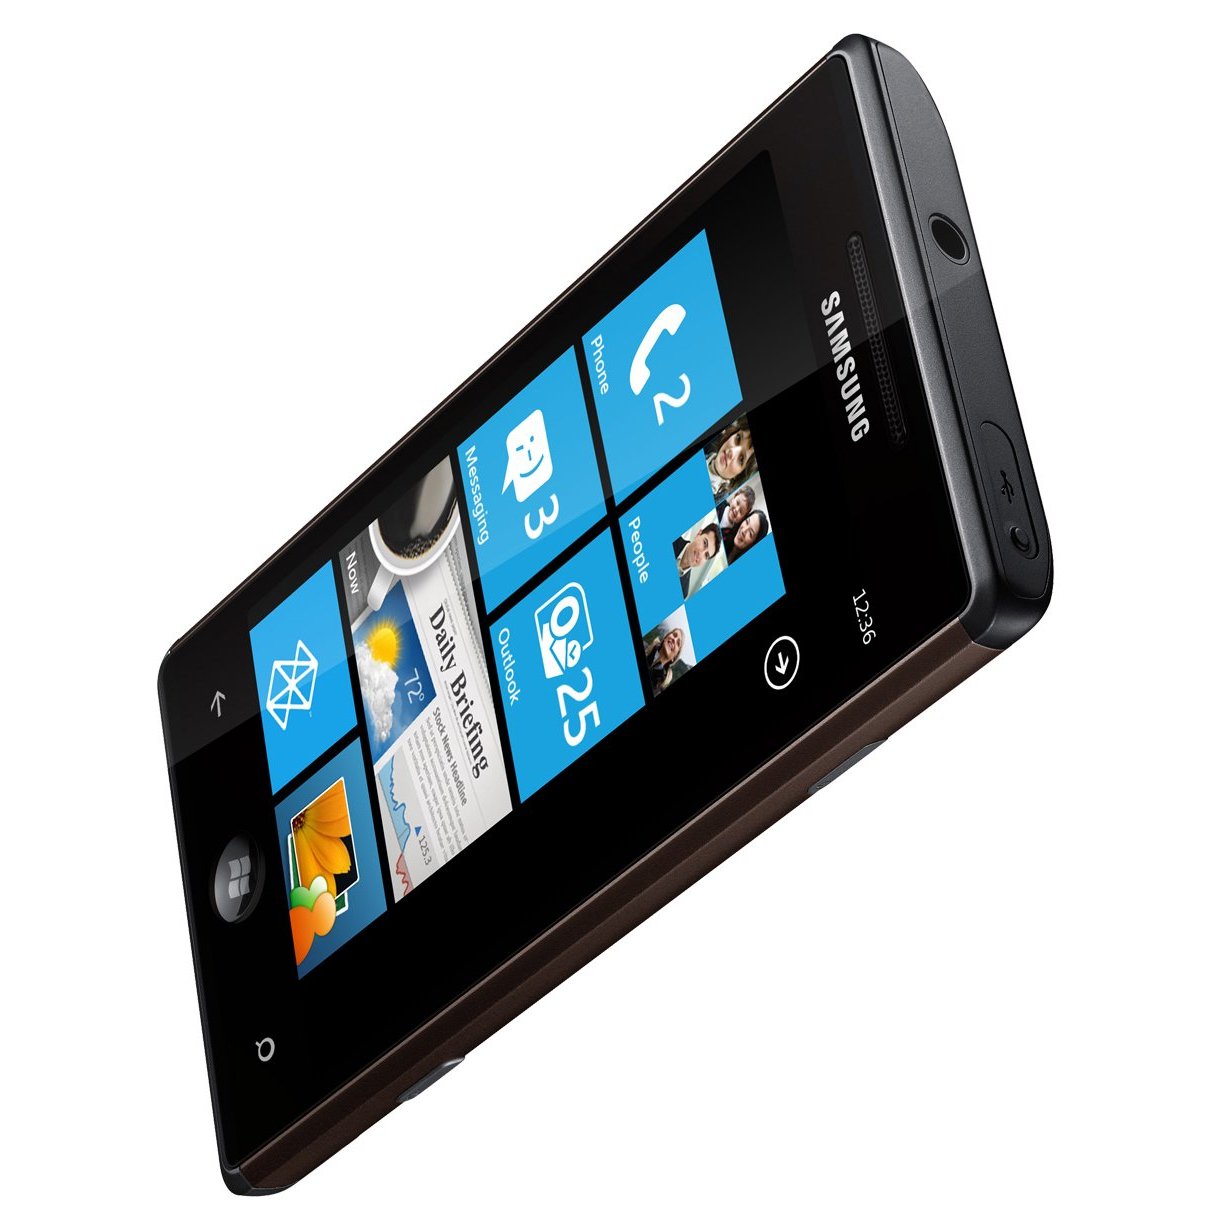 Bild: Samsung Omnia 7 I8700 mit Windows Phone 7, Quelle: Amazon.de